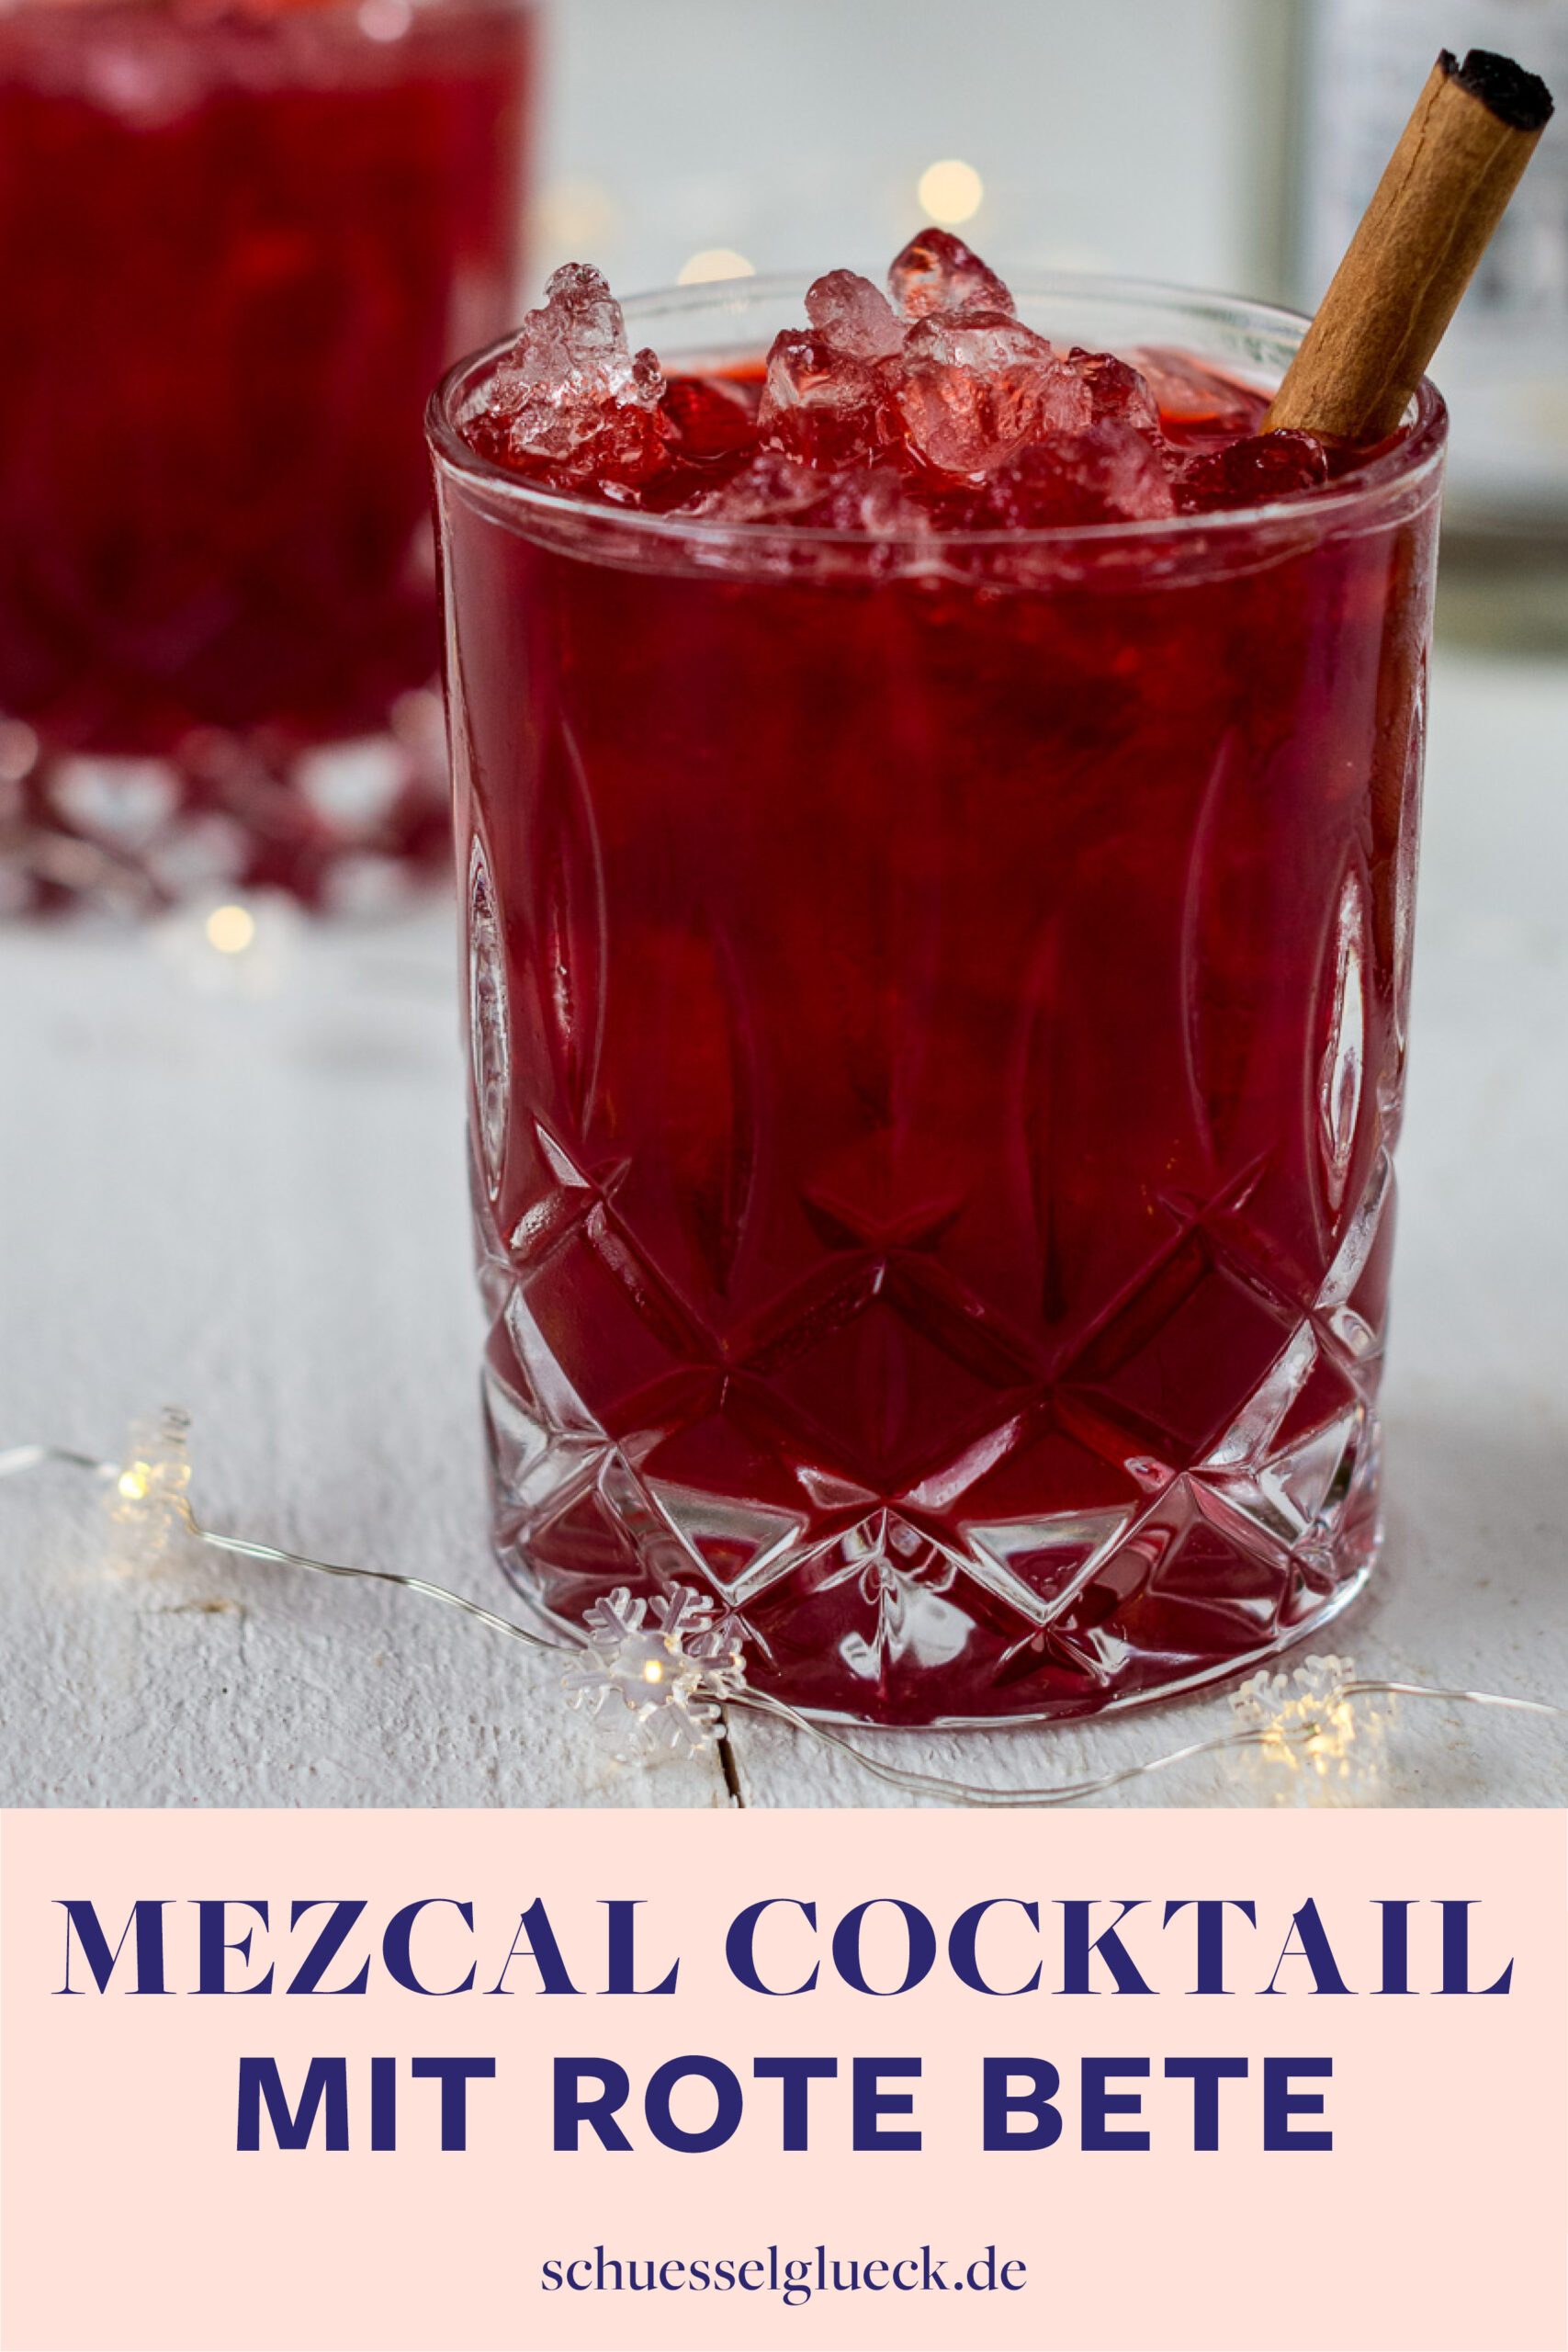 Rote Bete Mezcalita mit Zimt – der perfekte Feiertags-Cocktail